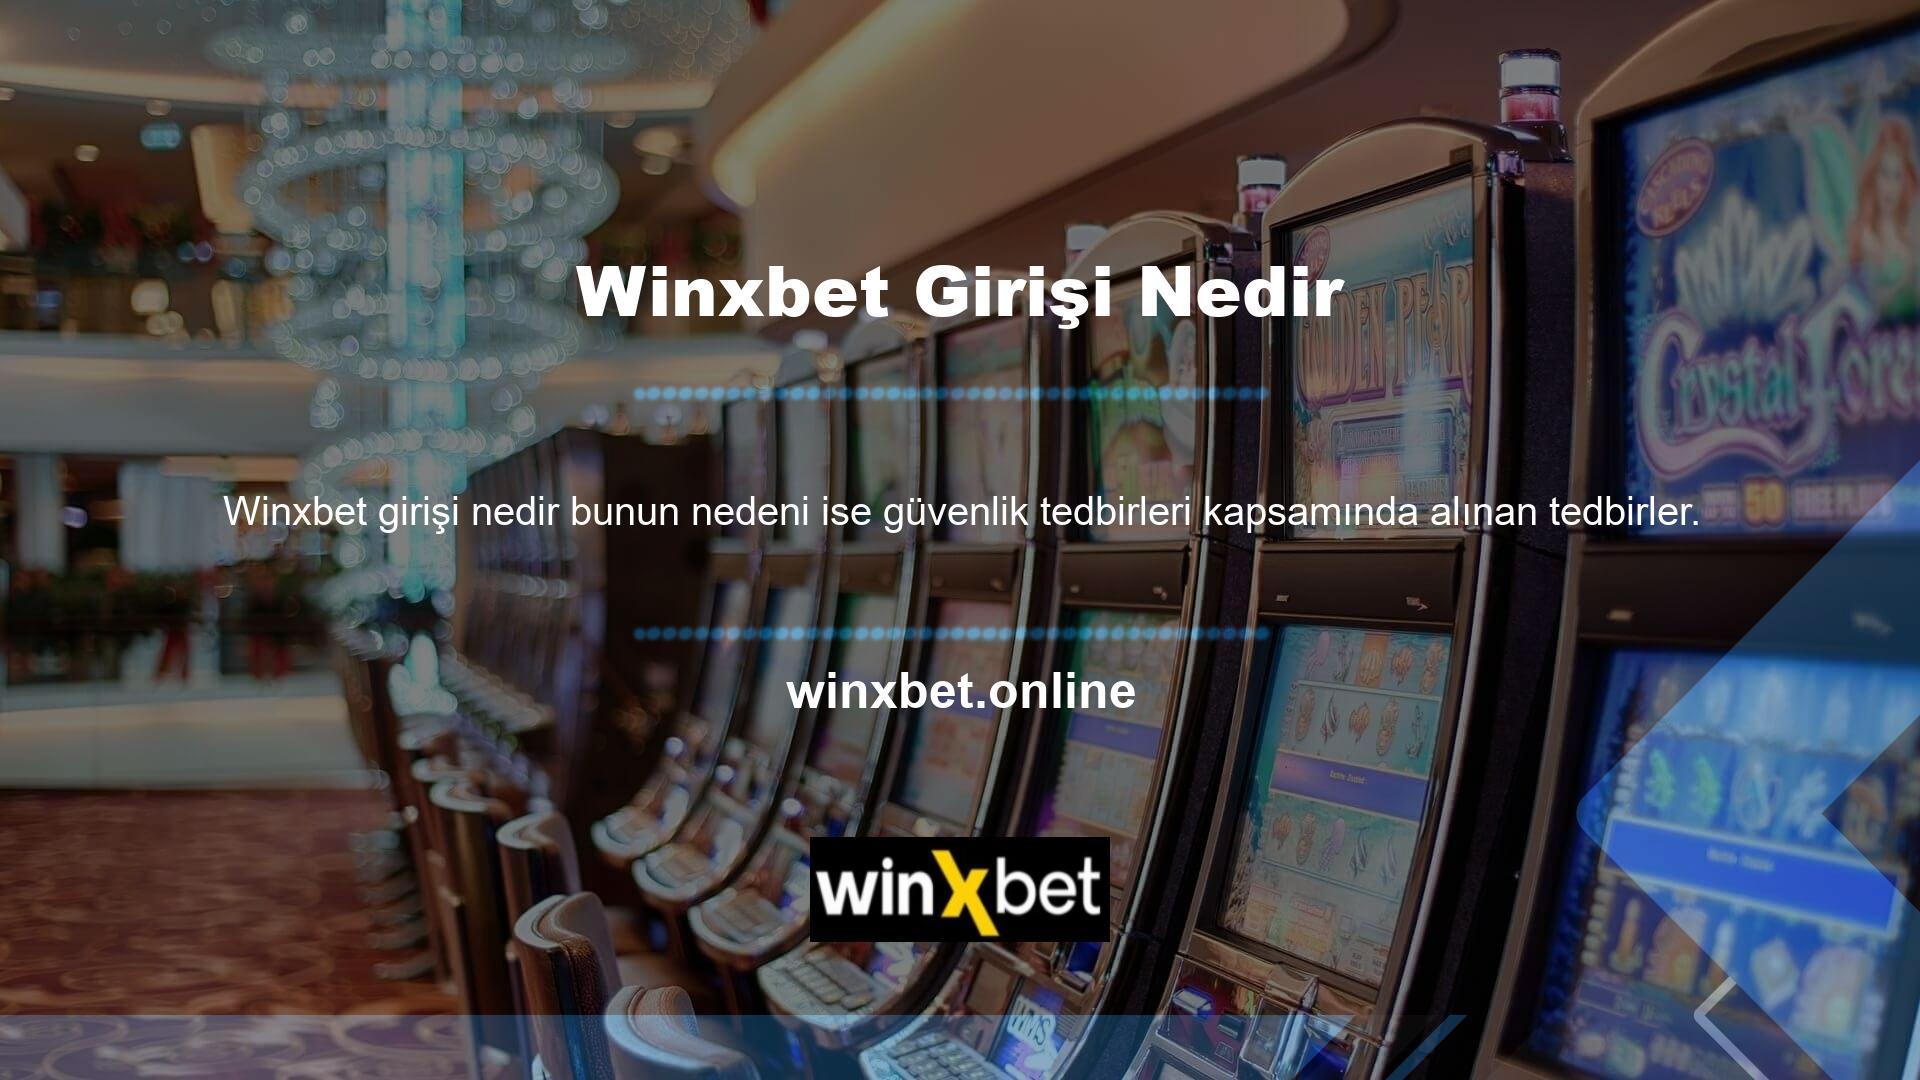 Winxbet yeni bir adresle geri döndü, ancak bu ülkede yasaklanan casino hizmetleri hala engellenmenin eşiğinde